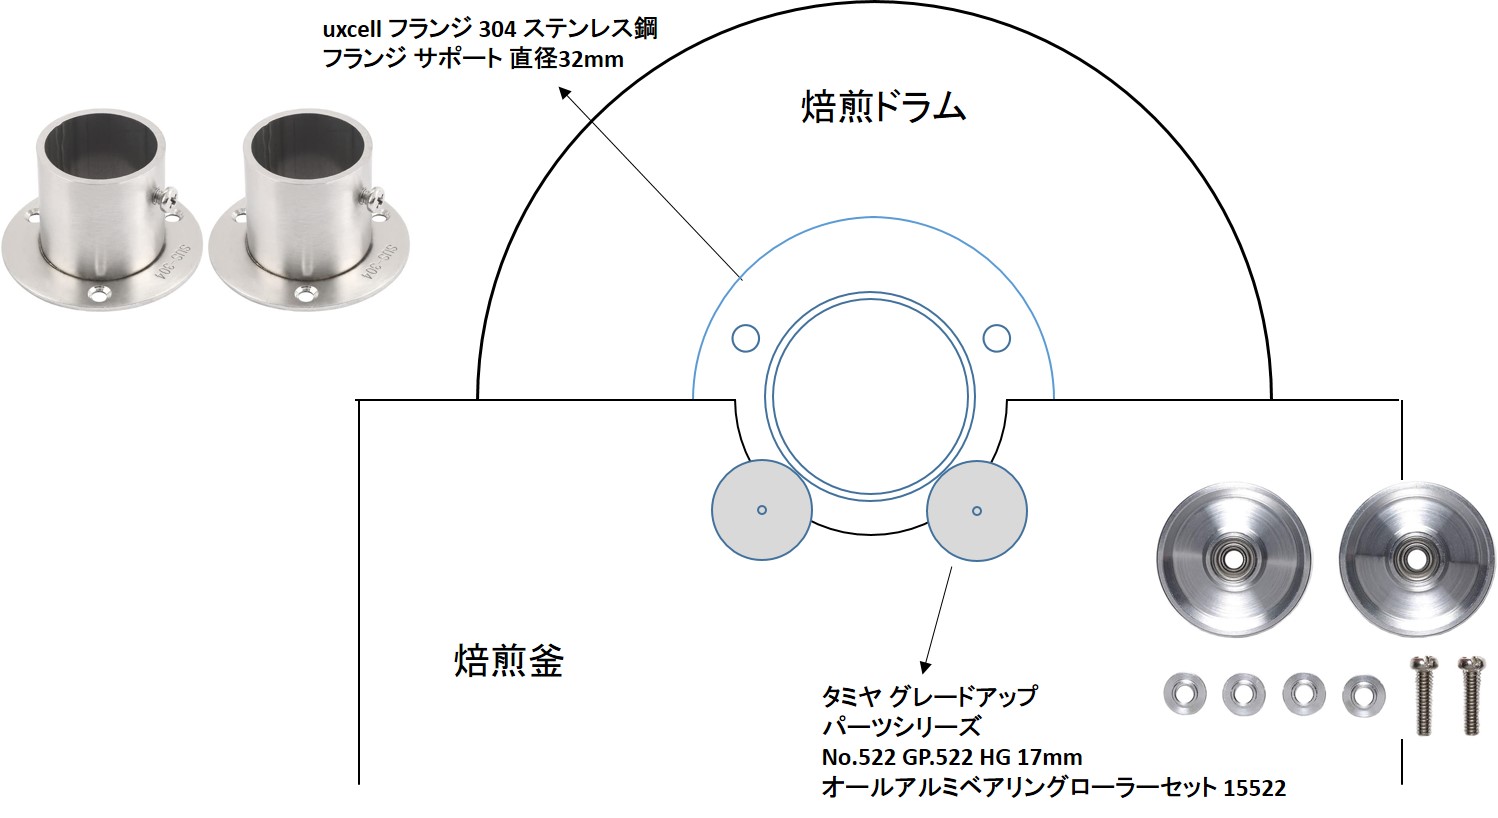 霞川翡翠日誌Ⅱ: 自作焙煎機の改修